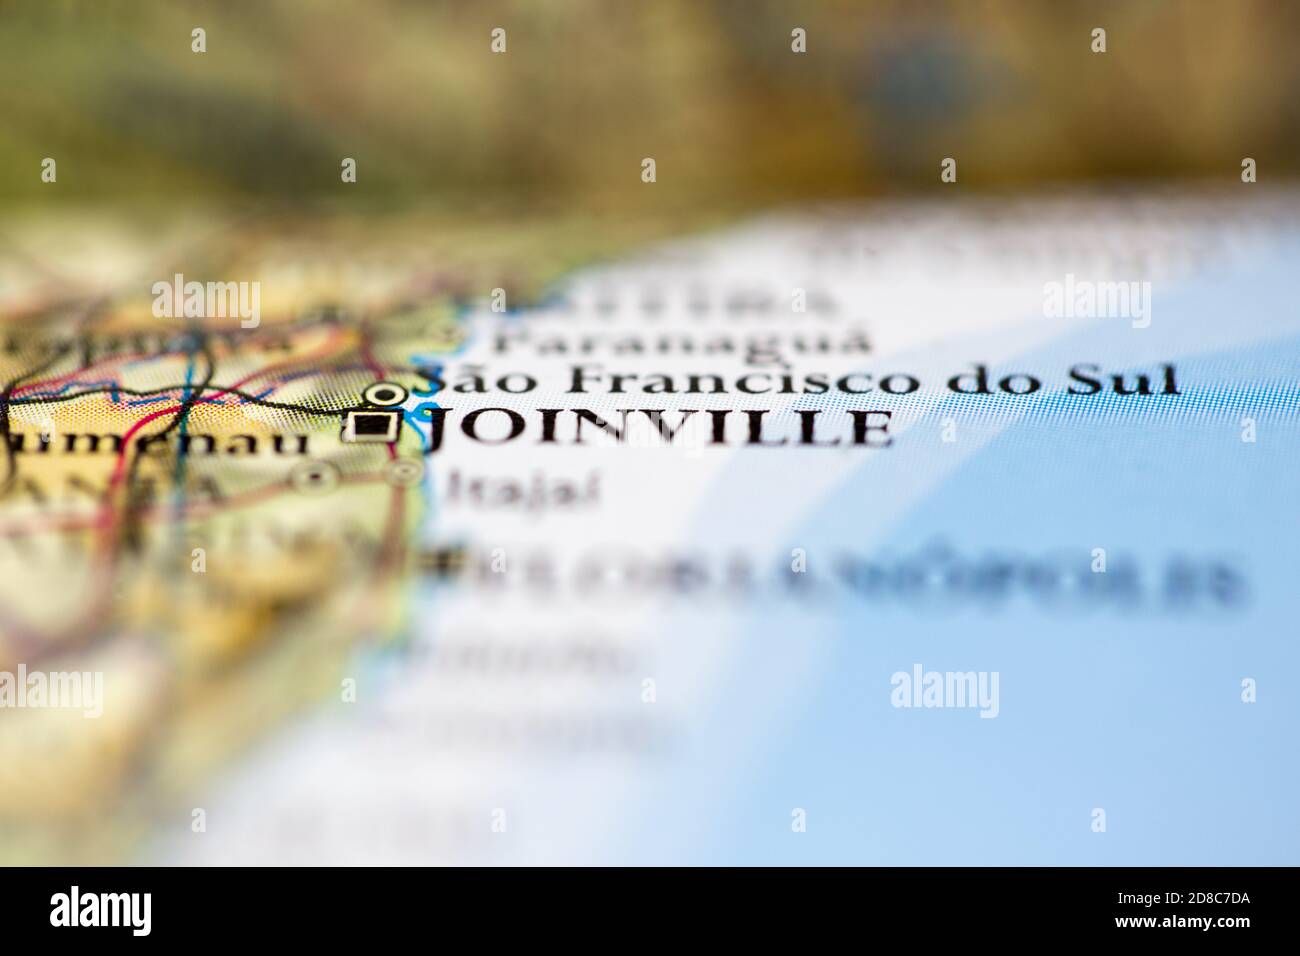 Profundidad de campo reducida se centra en la ubicación del mapa geográfico de Joinville ciudad Brasil América del Sur continente en atlas Foto de stock